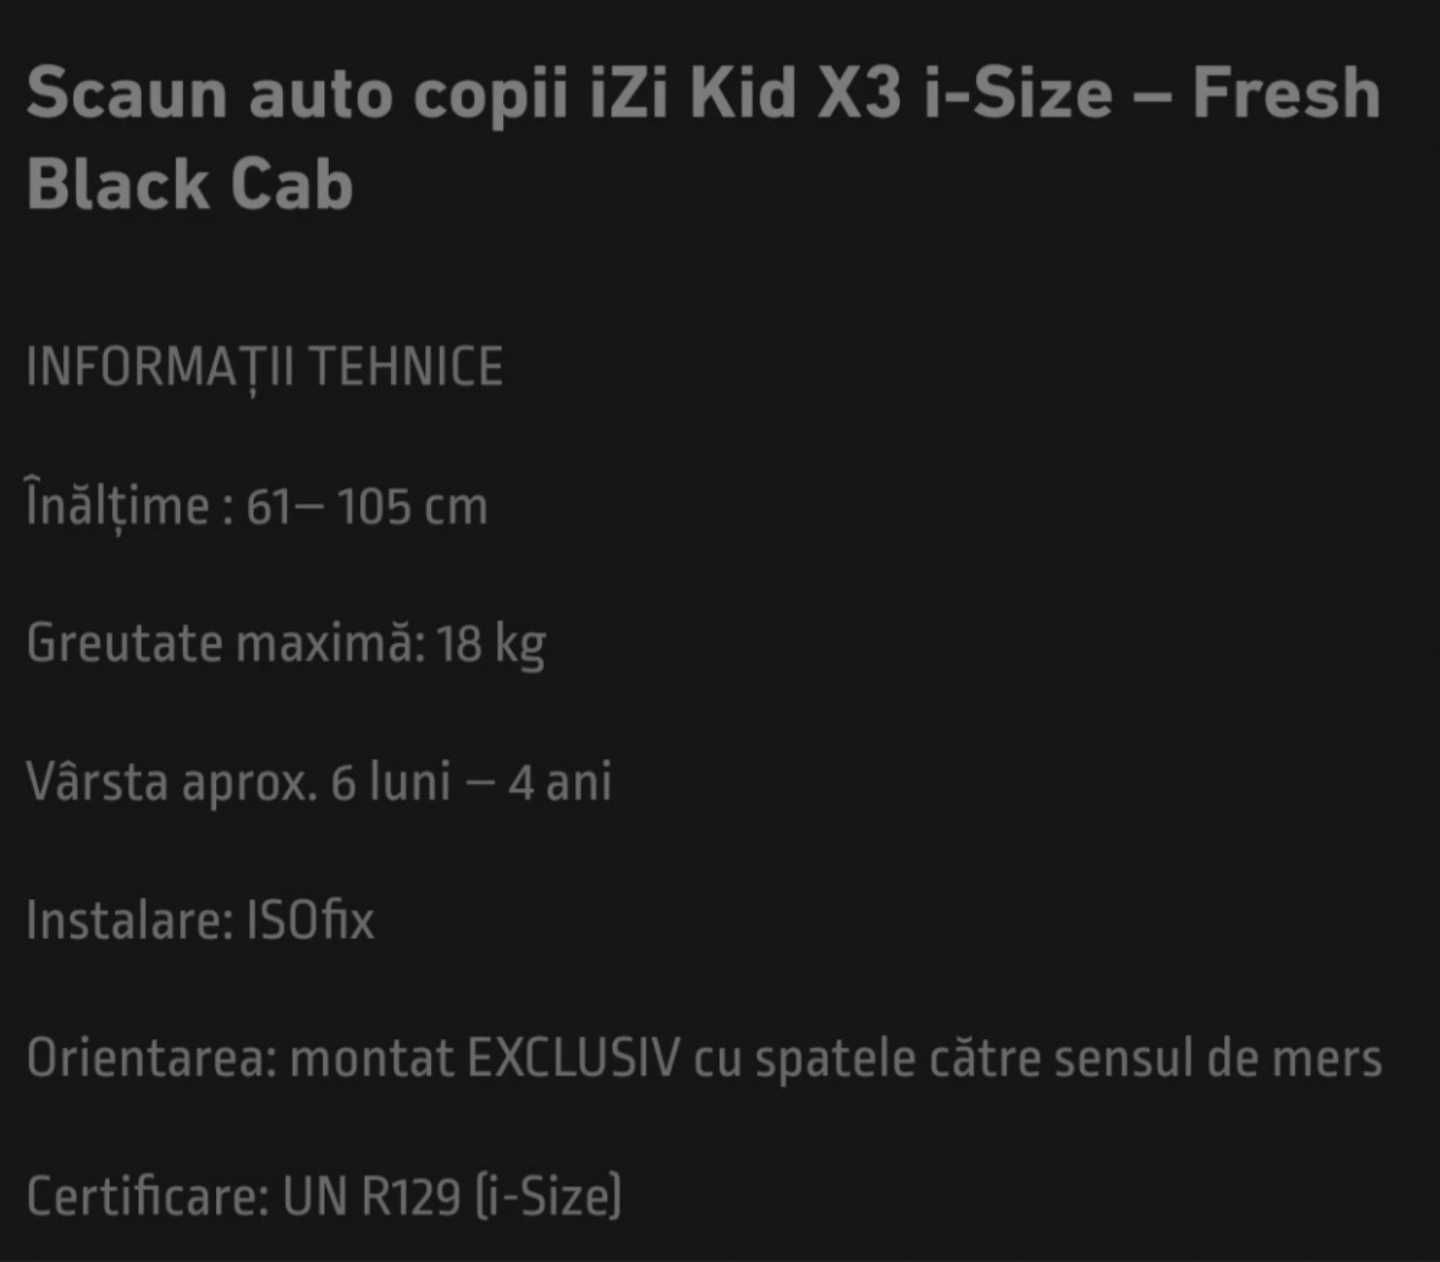 Scaun de masina pentru copii - Izi Kid X3 iSize